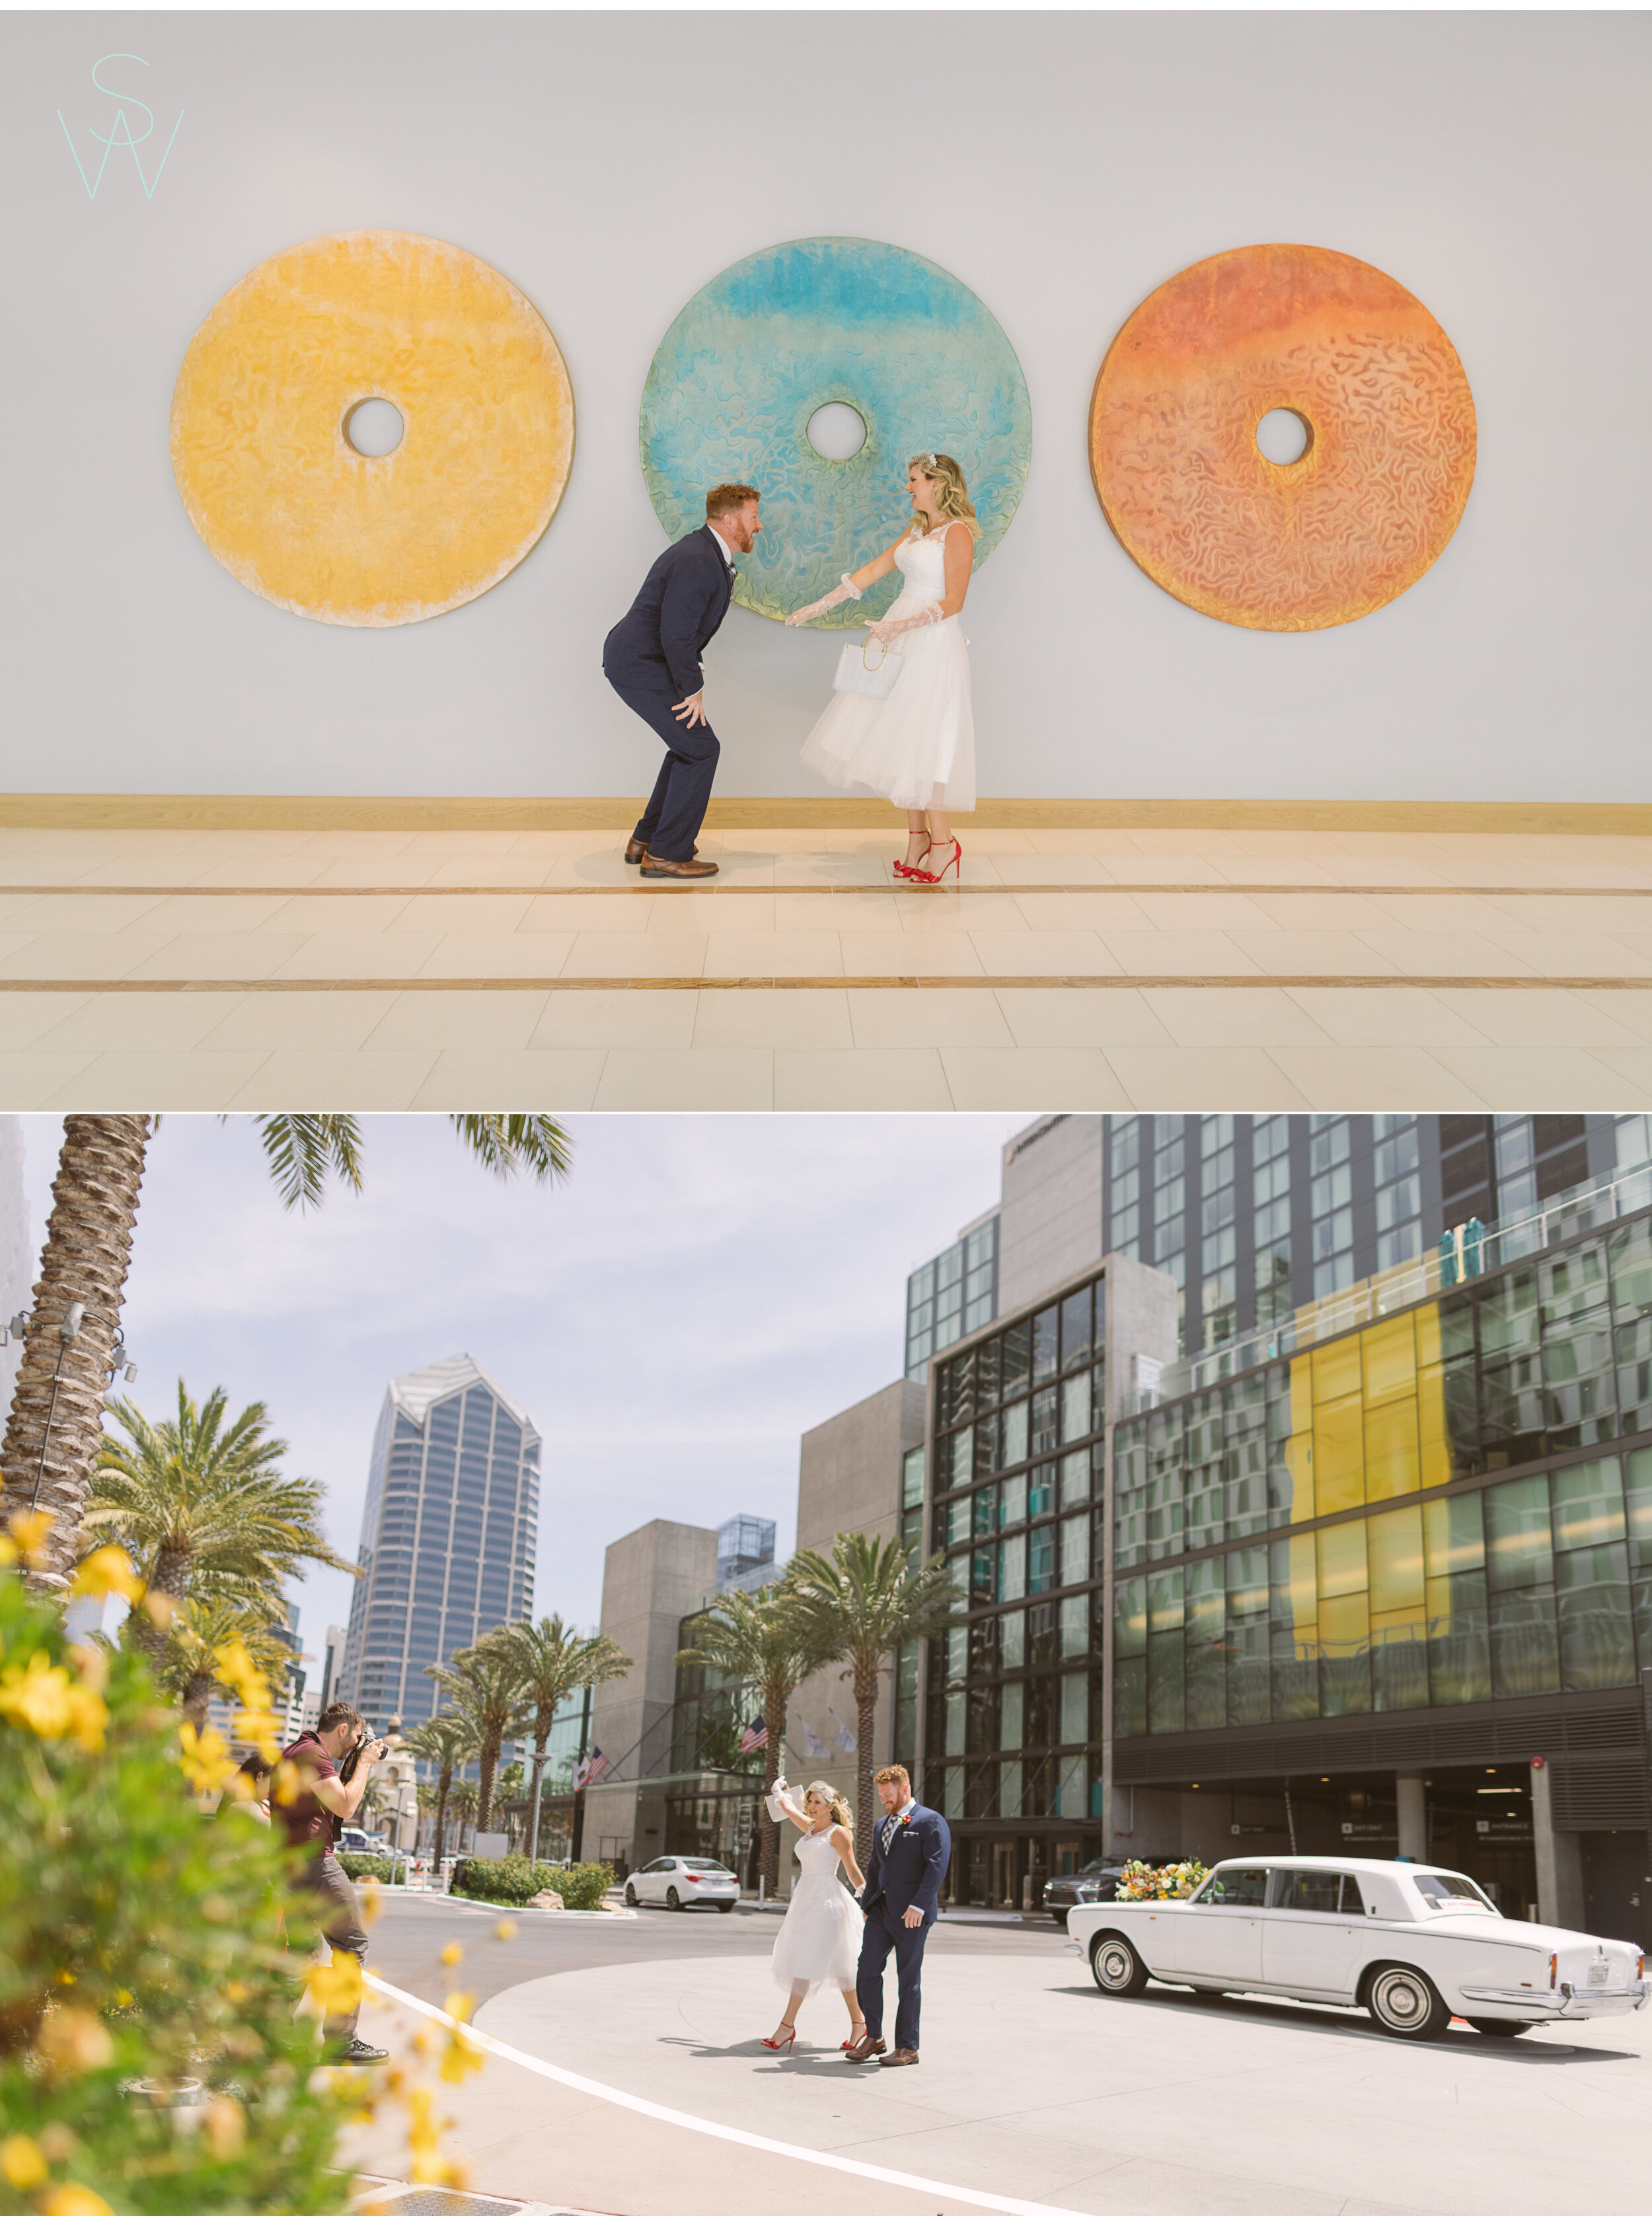 San Diego Wedding Photography Shewanders 